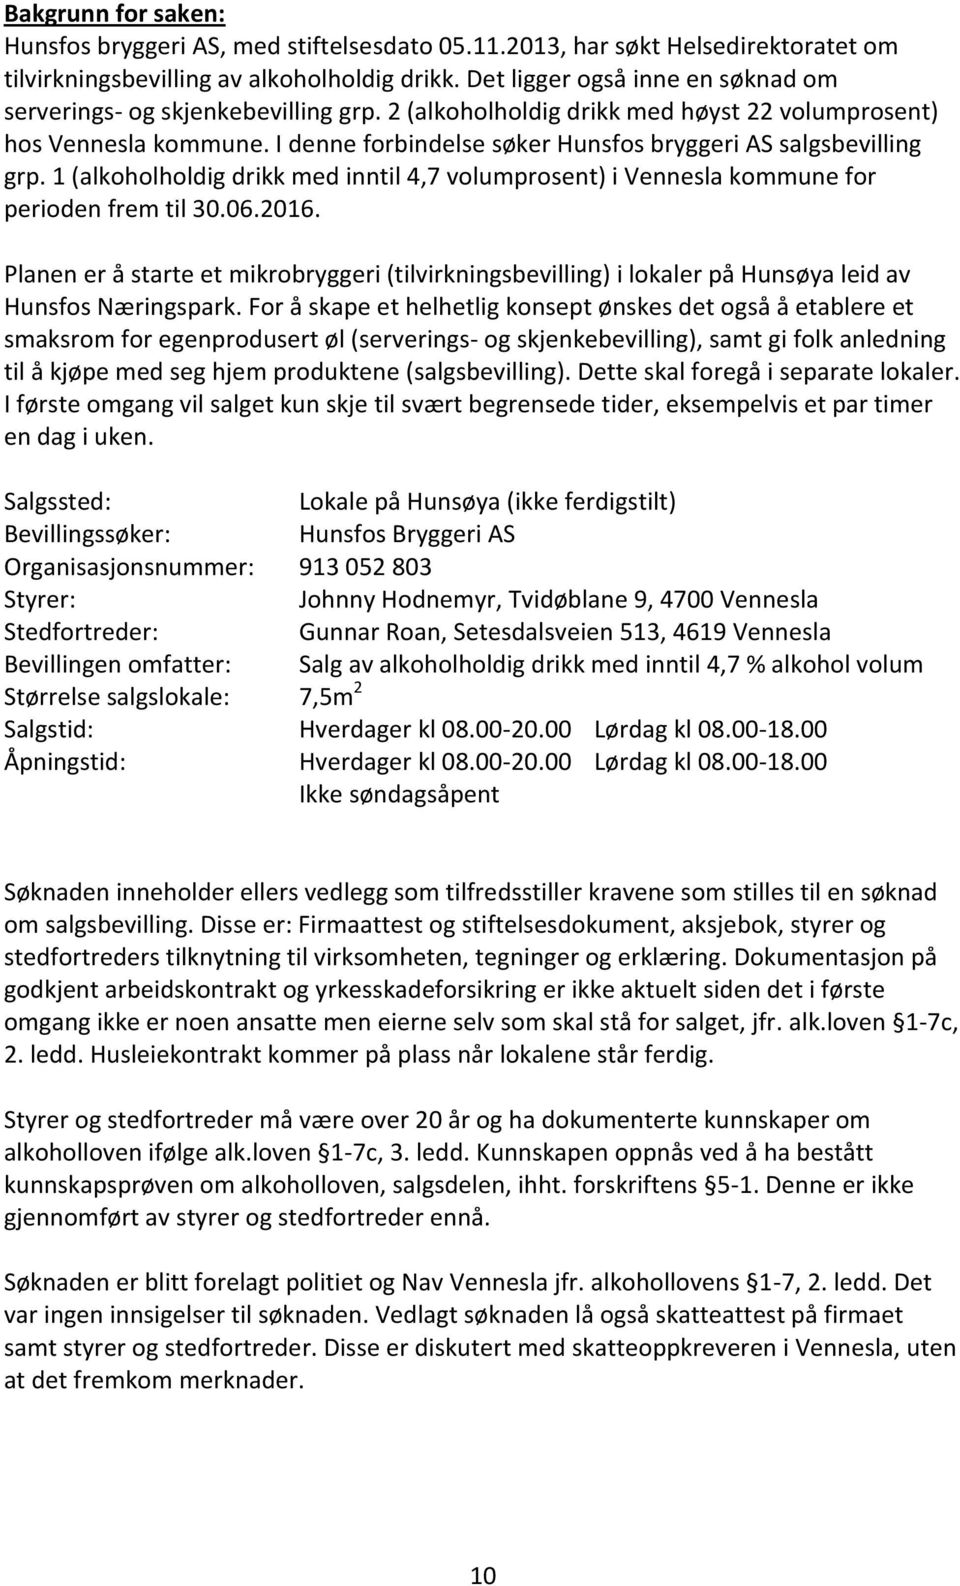 I denne forbindelse søker Hunsfos bryggeri AS salgsbevilling grp. 1 (alkoholholdig drikk med inntil 4,7 volumprosent) i Vennesla kommune for perioden frem til 30.06.2016.